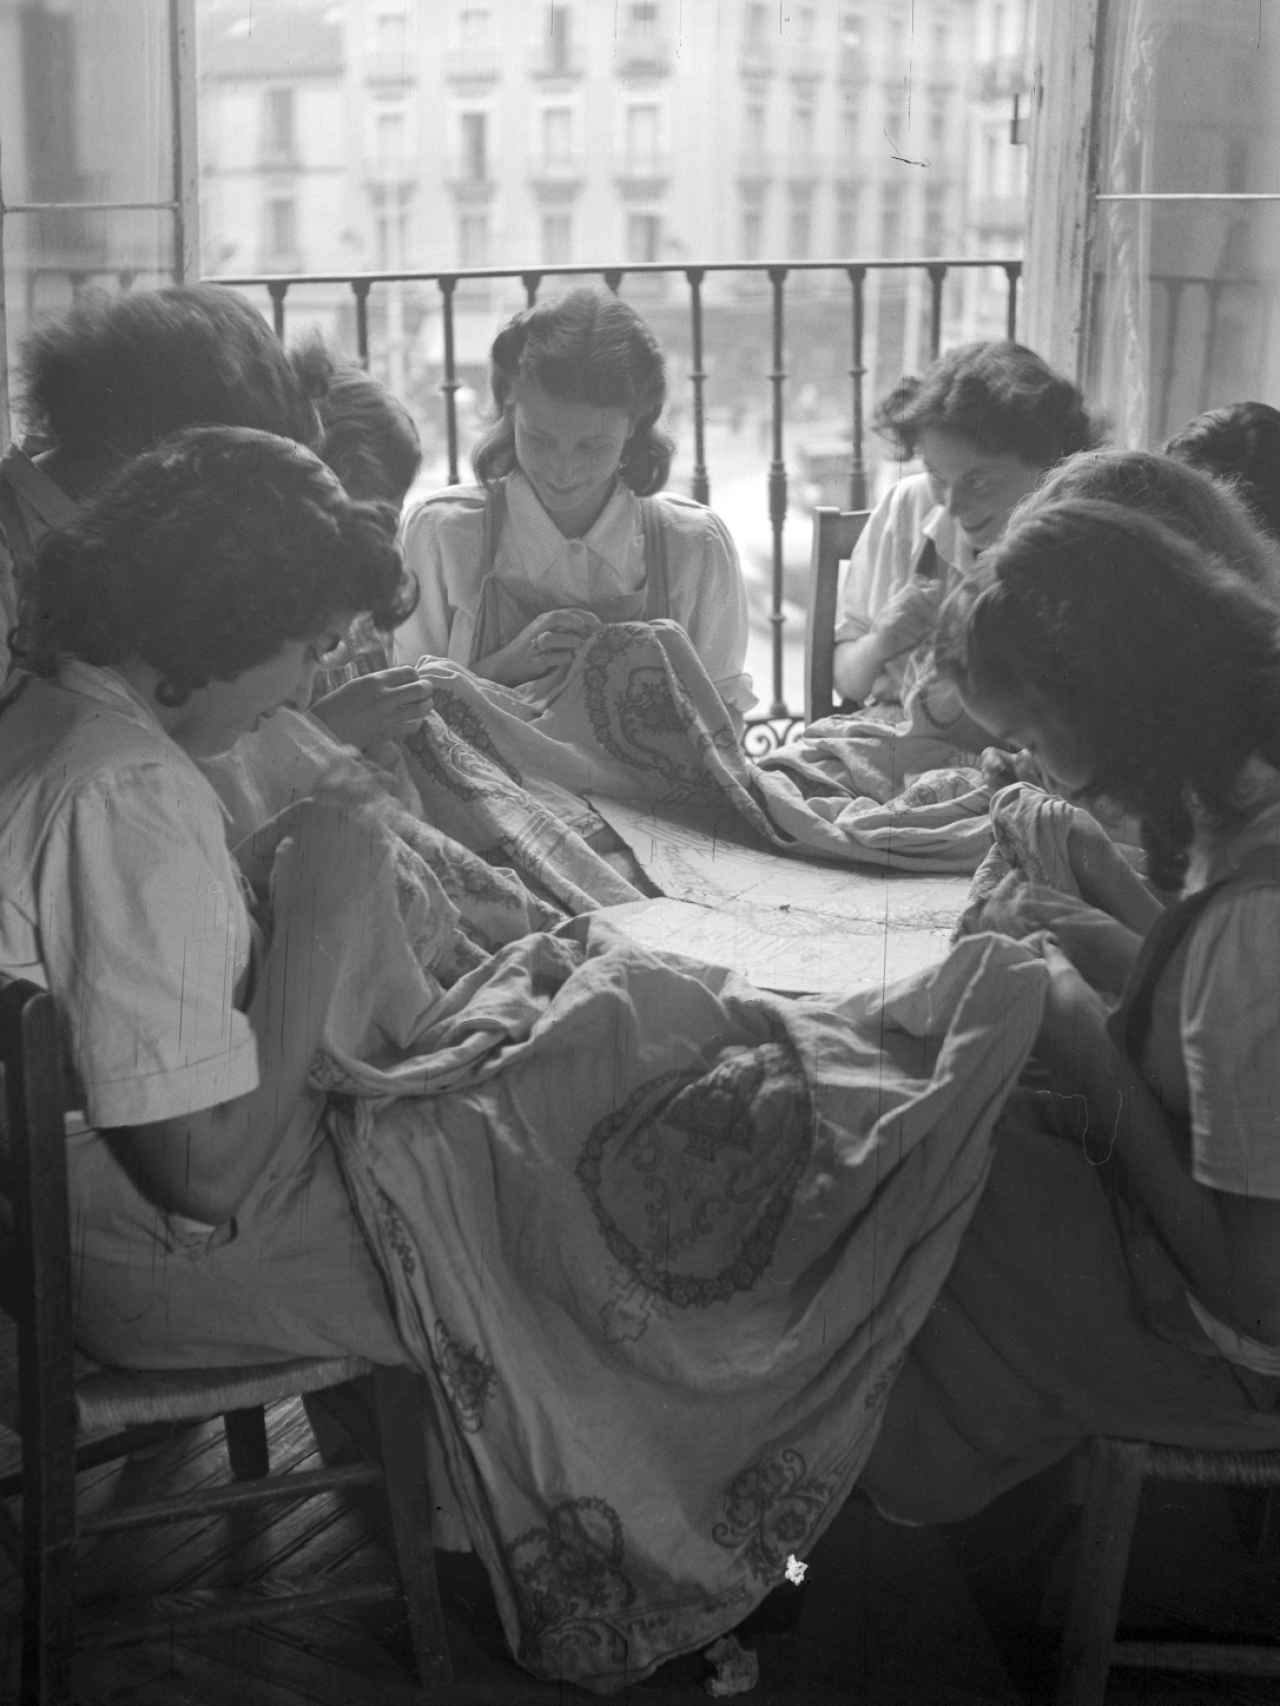 Bordadoras de una de las Escuelas del Hogar de la Sección Femenina, en Madrid, 1947.